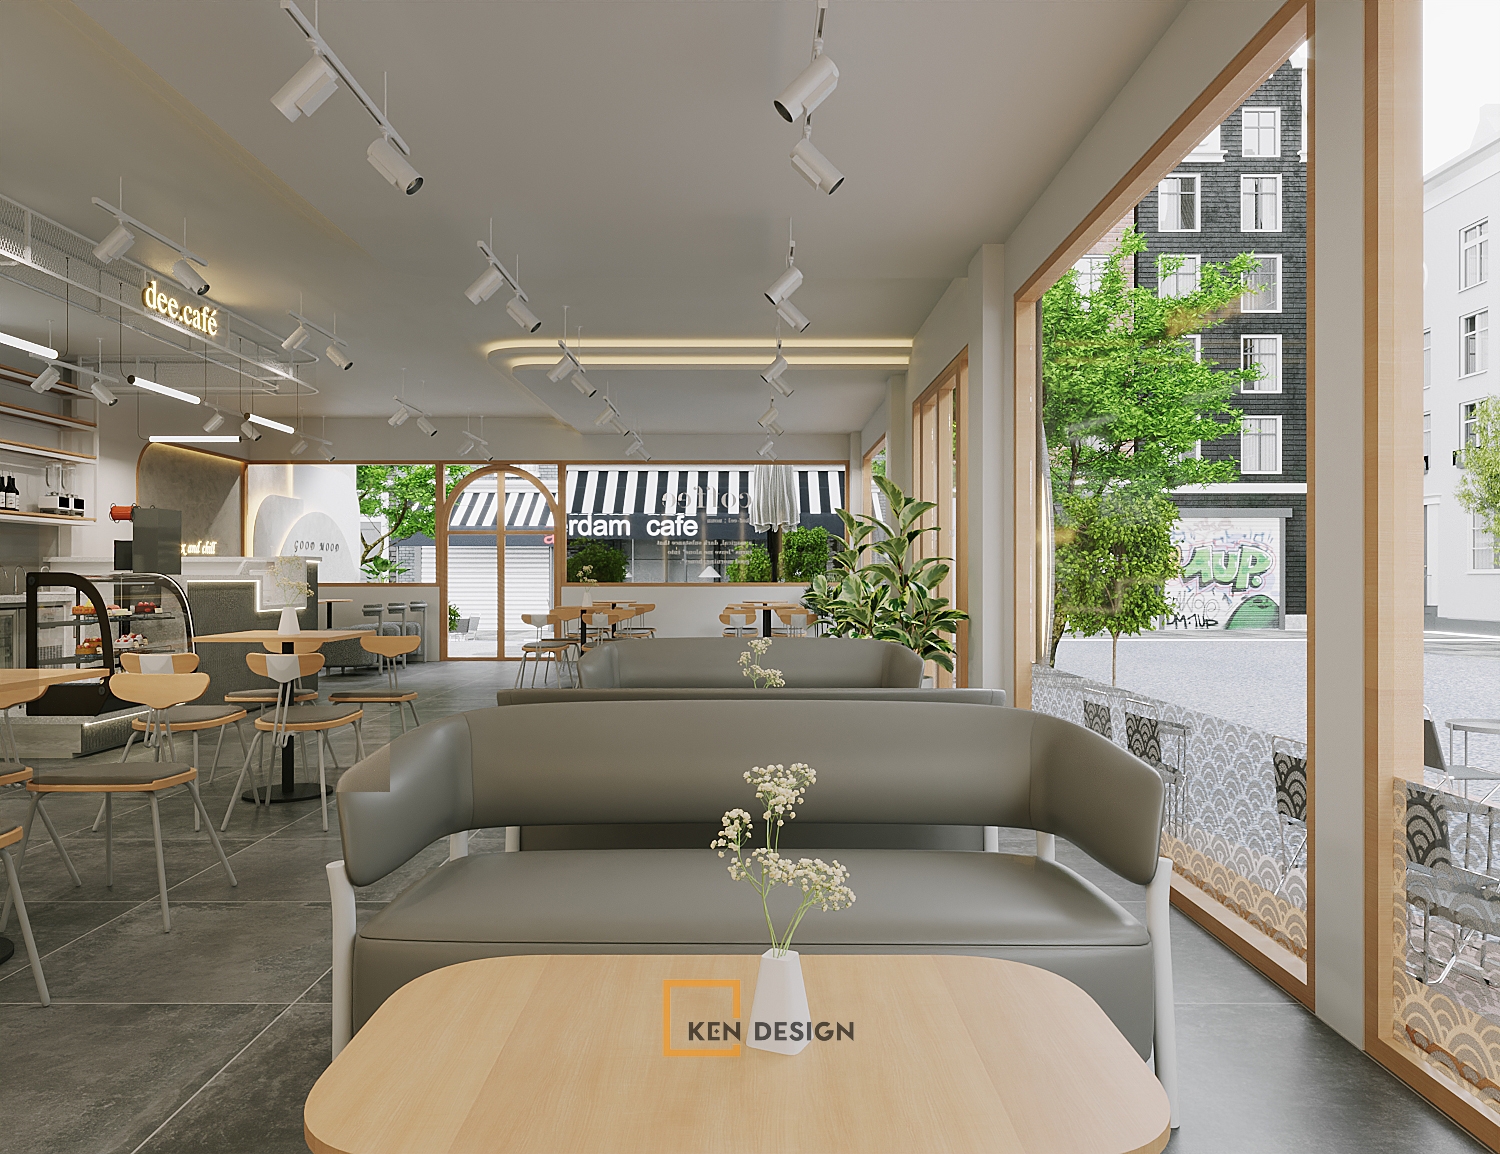 Thiết kế quán cafe Dee.Cafe Bắc Giang - Cảm hứng từ phong cách hiện đại và tối giản